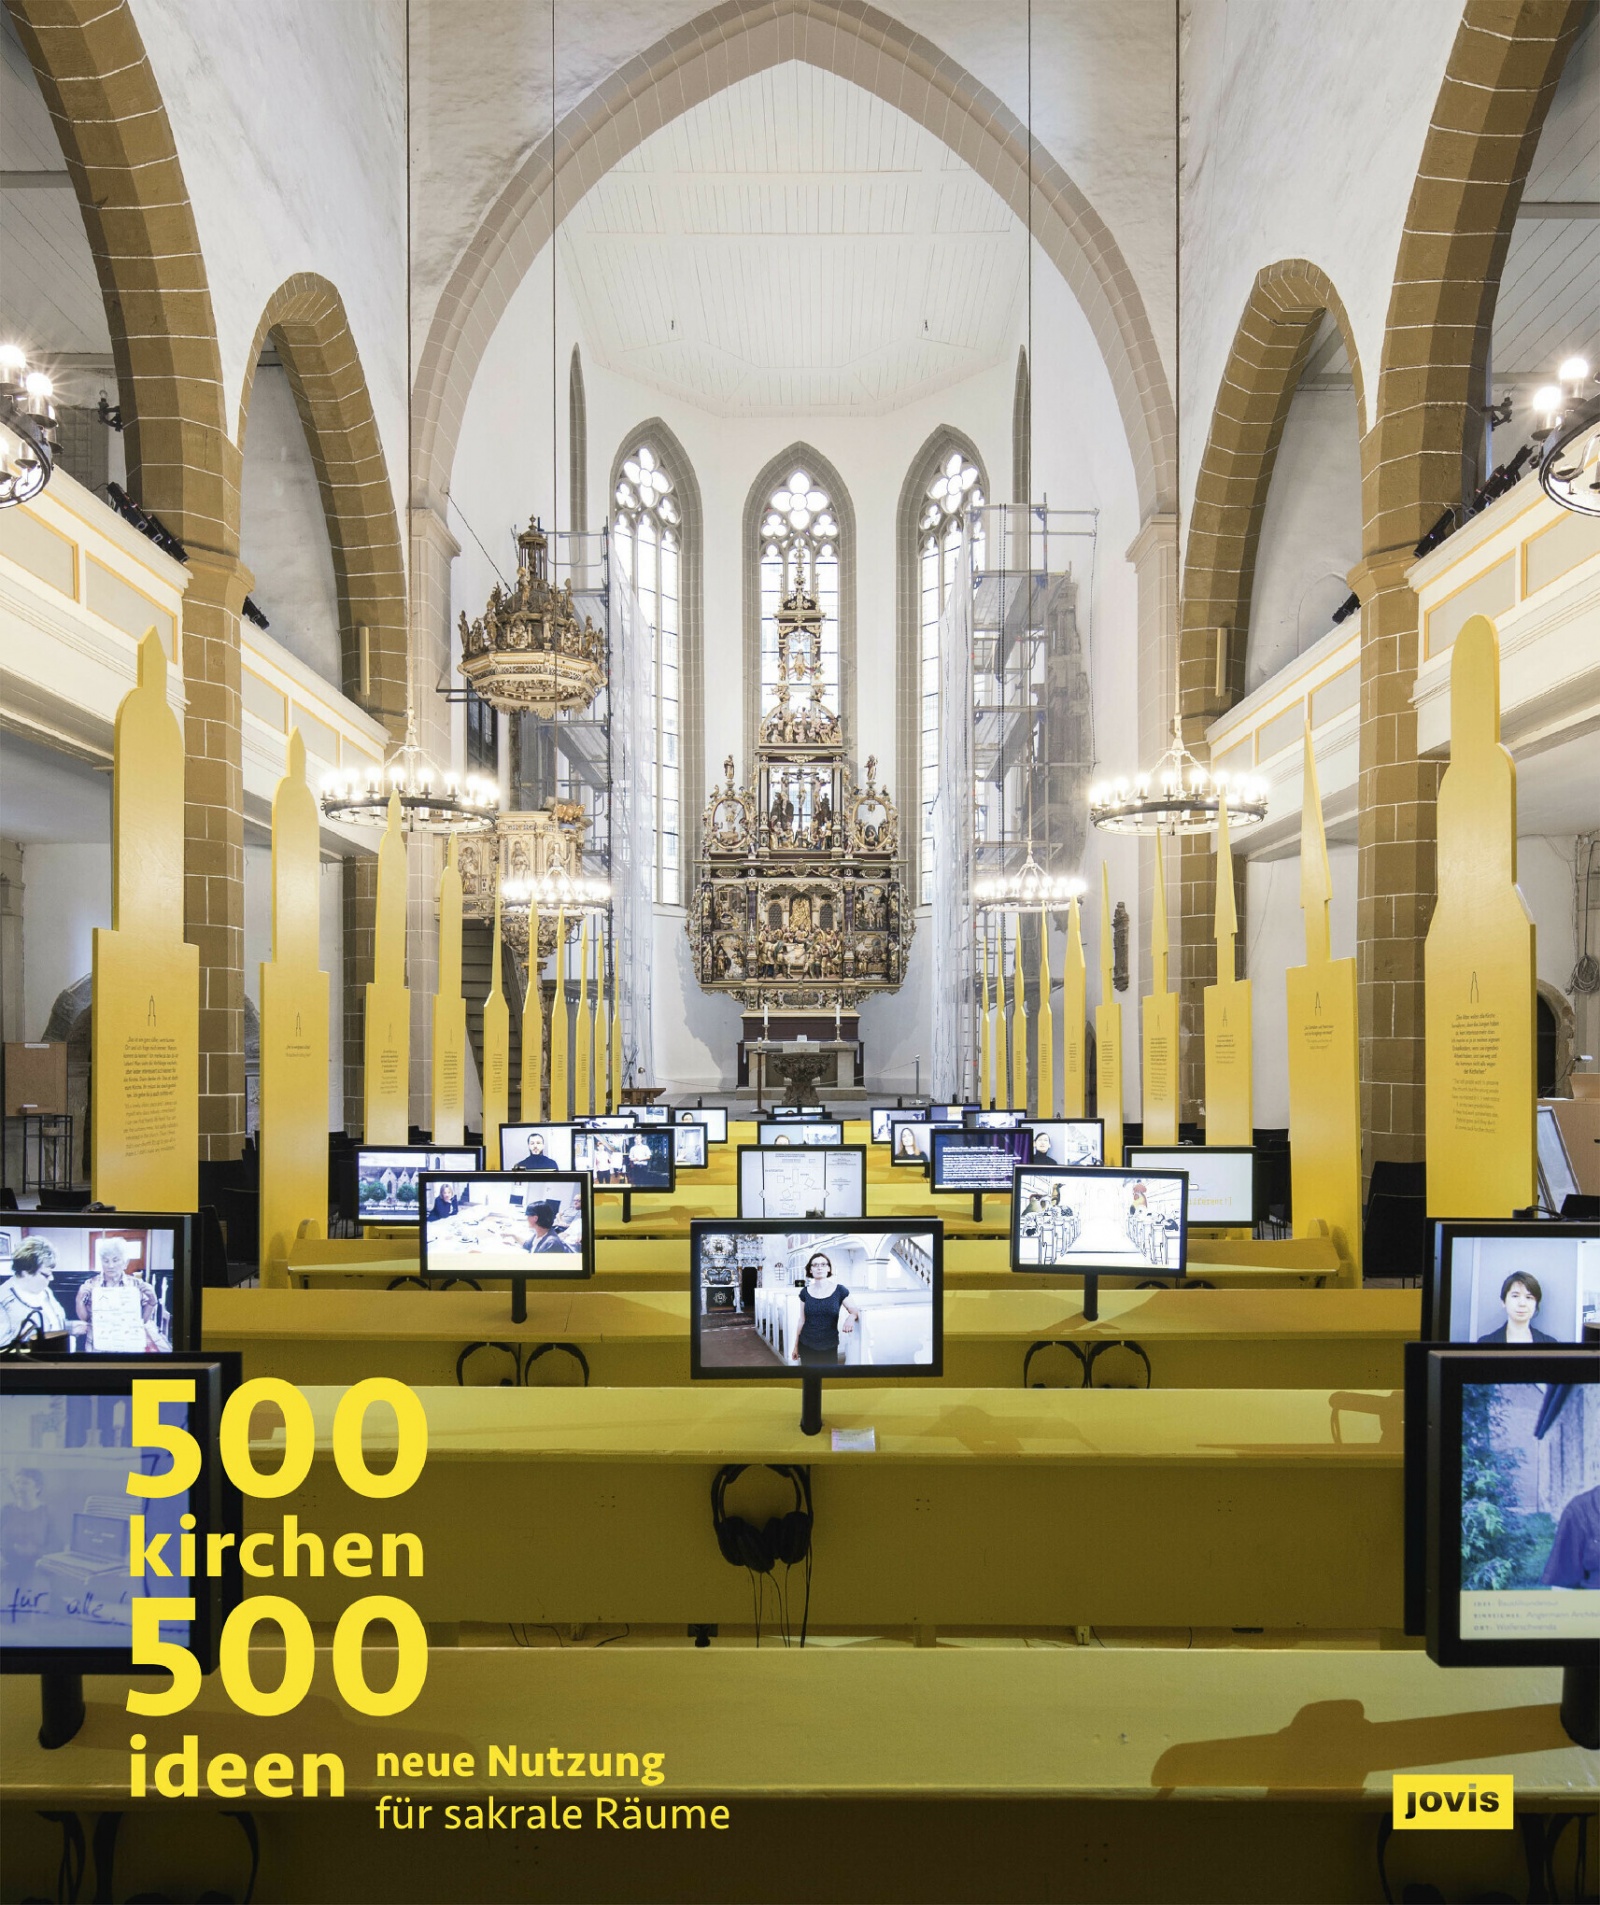 500 Kirchen - 500 Ideen, Cover (front) Publikation "500 Kirchen - 500 Ideen", Bild: Elke Bergt, Erfurt